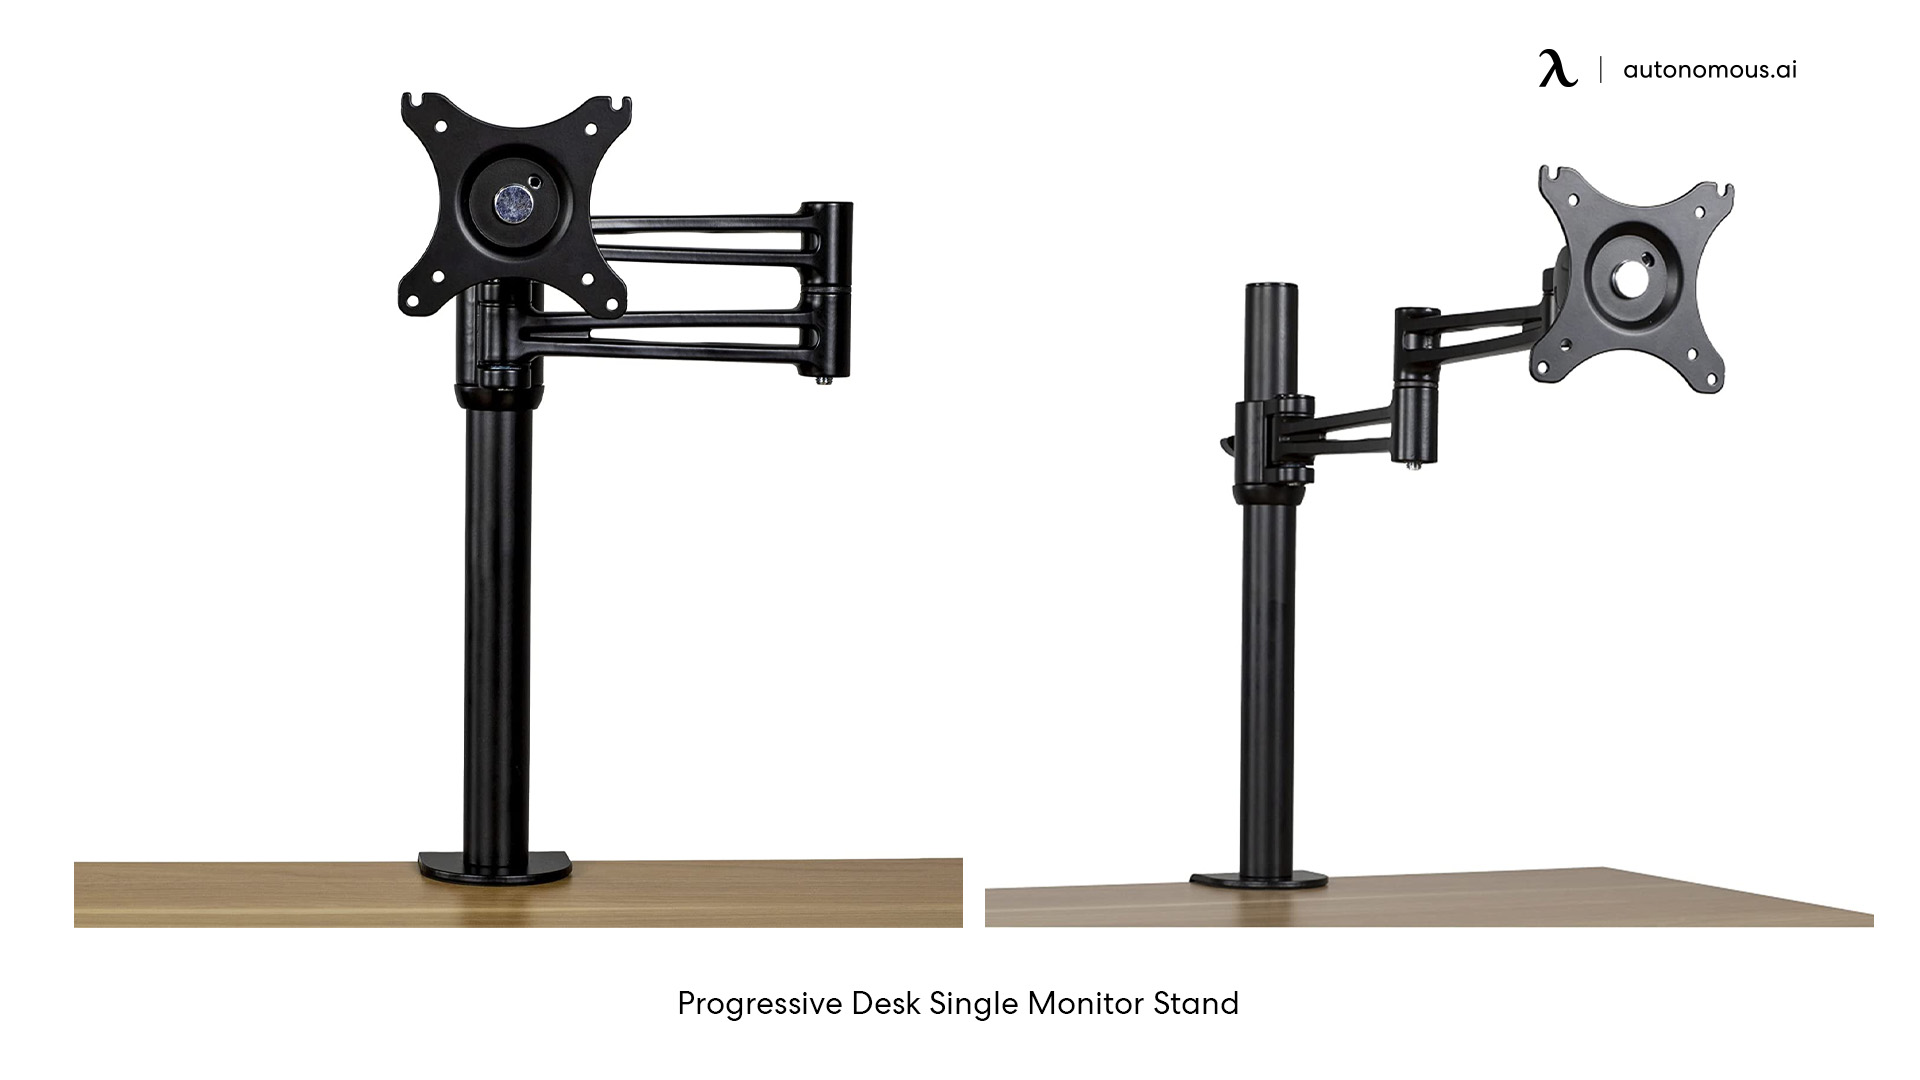 Progressive Desk Single Monitor Stand